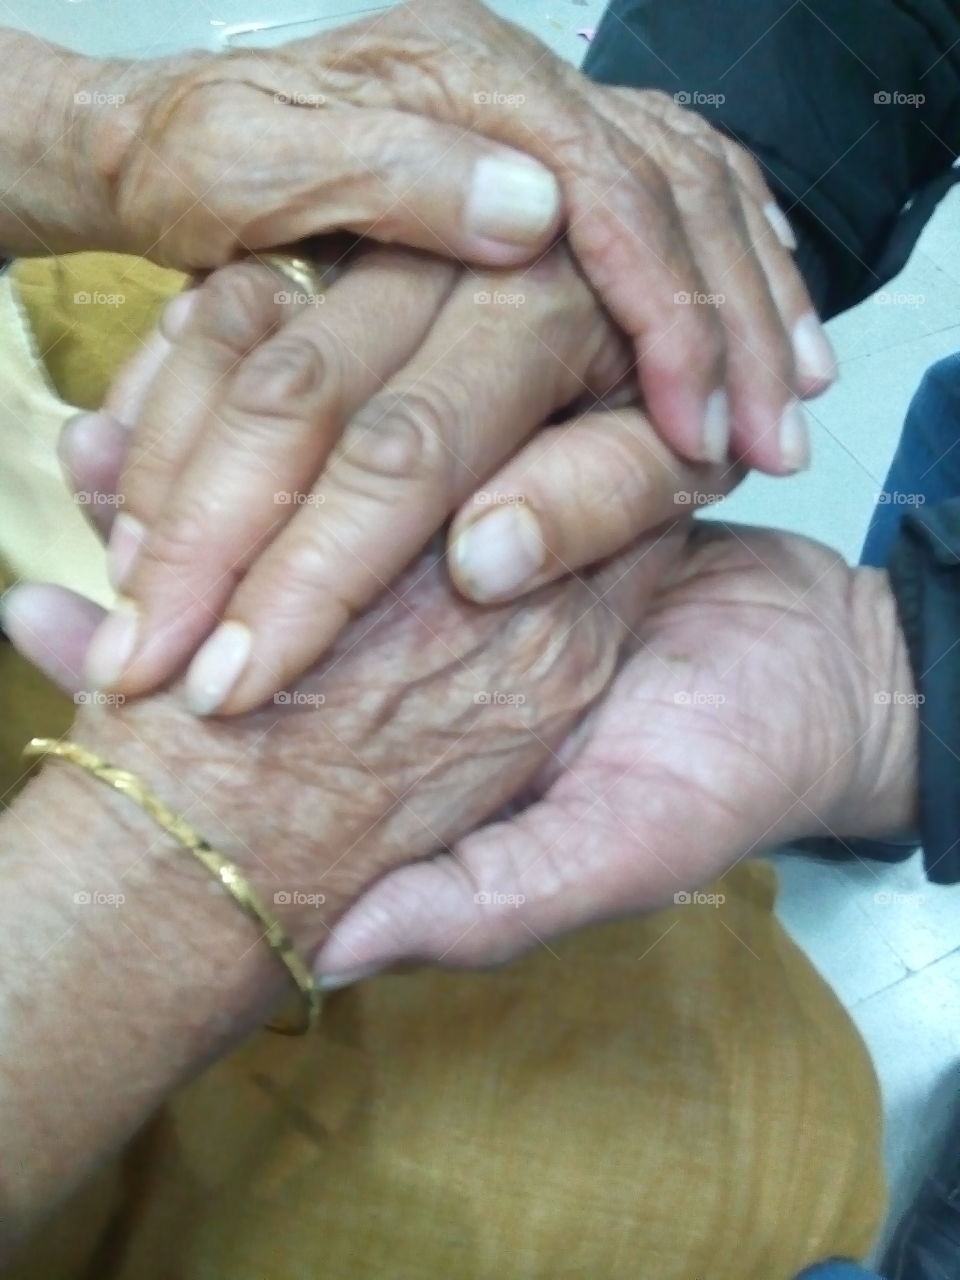 Holding hands together